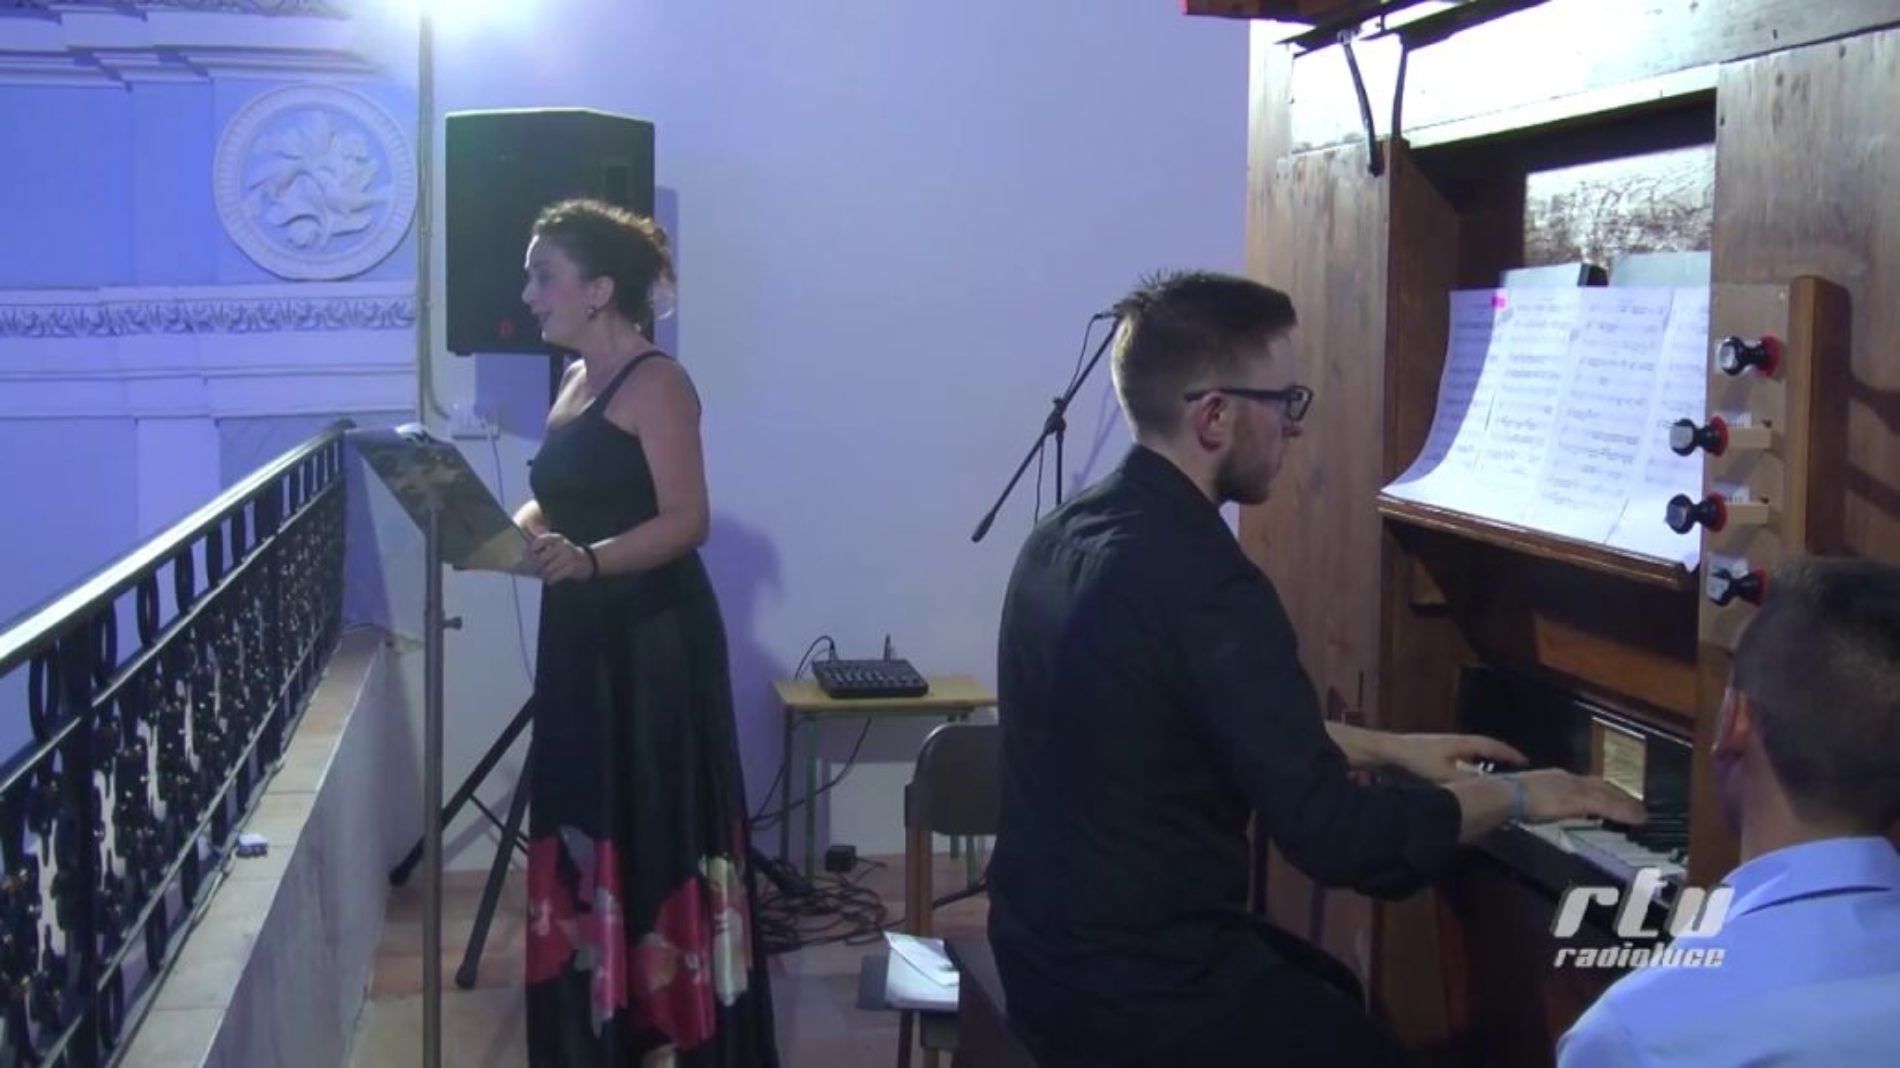 Video / Concerto di inaugurazione dell’organo a canne